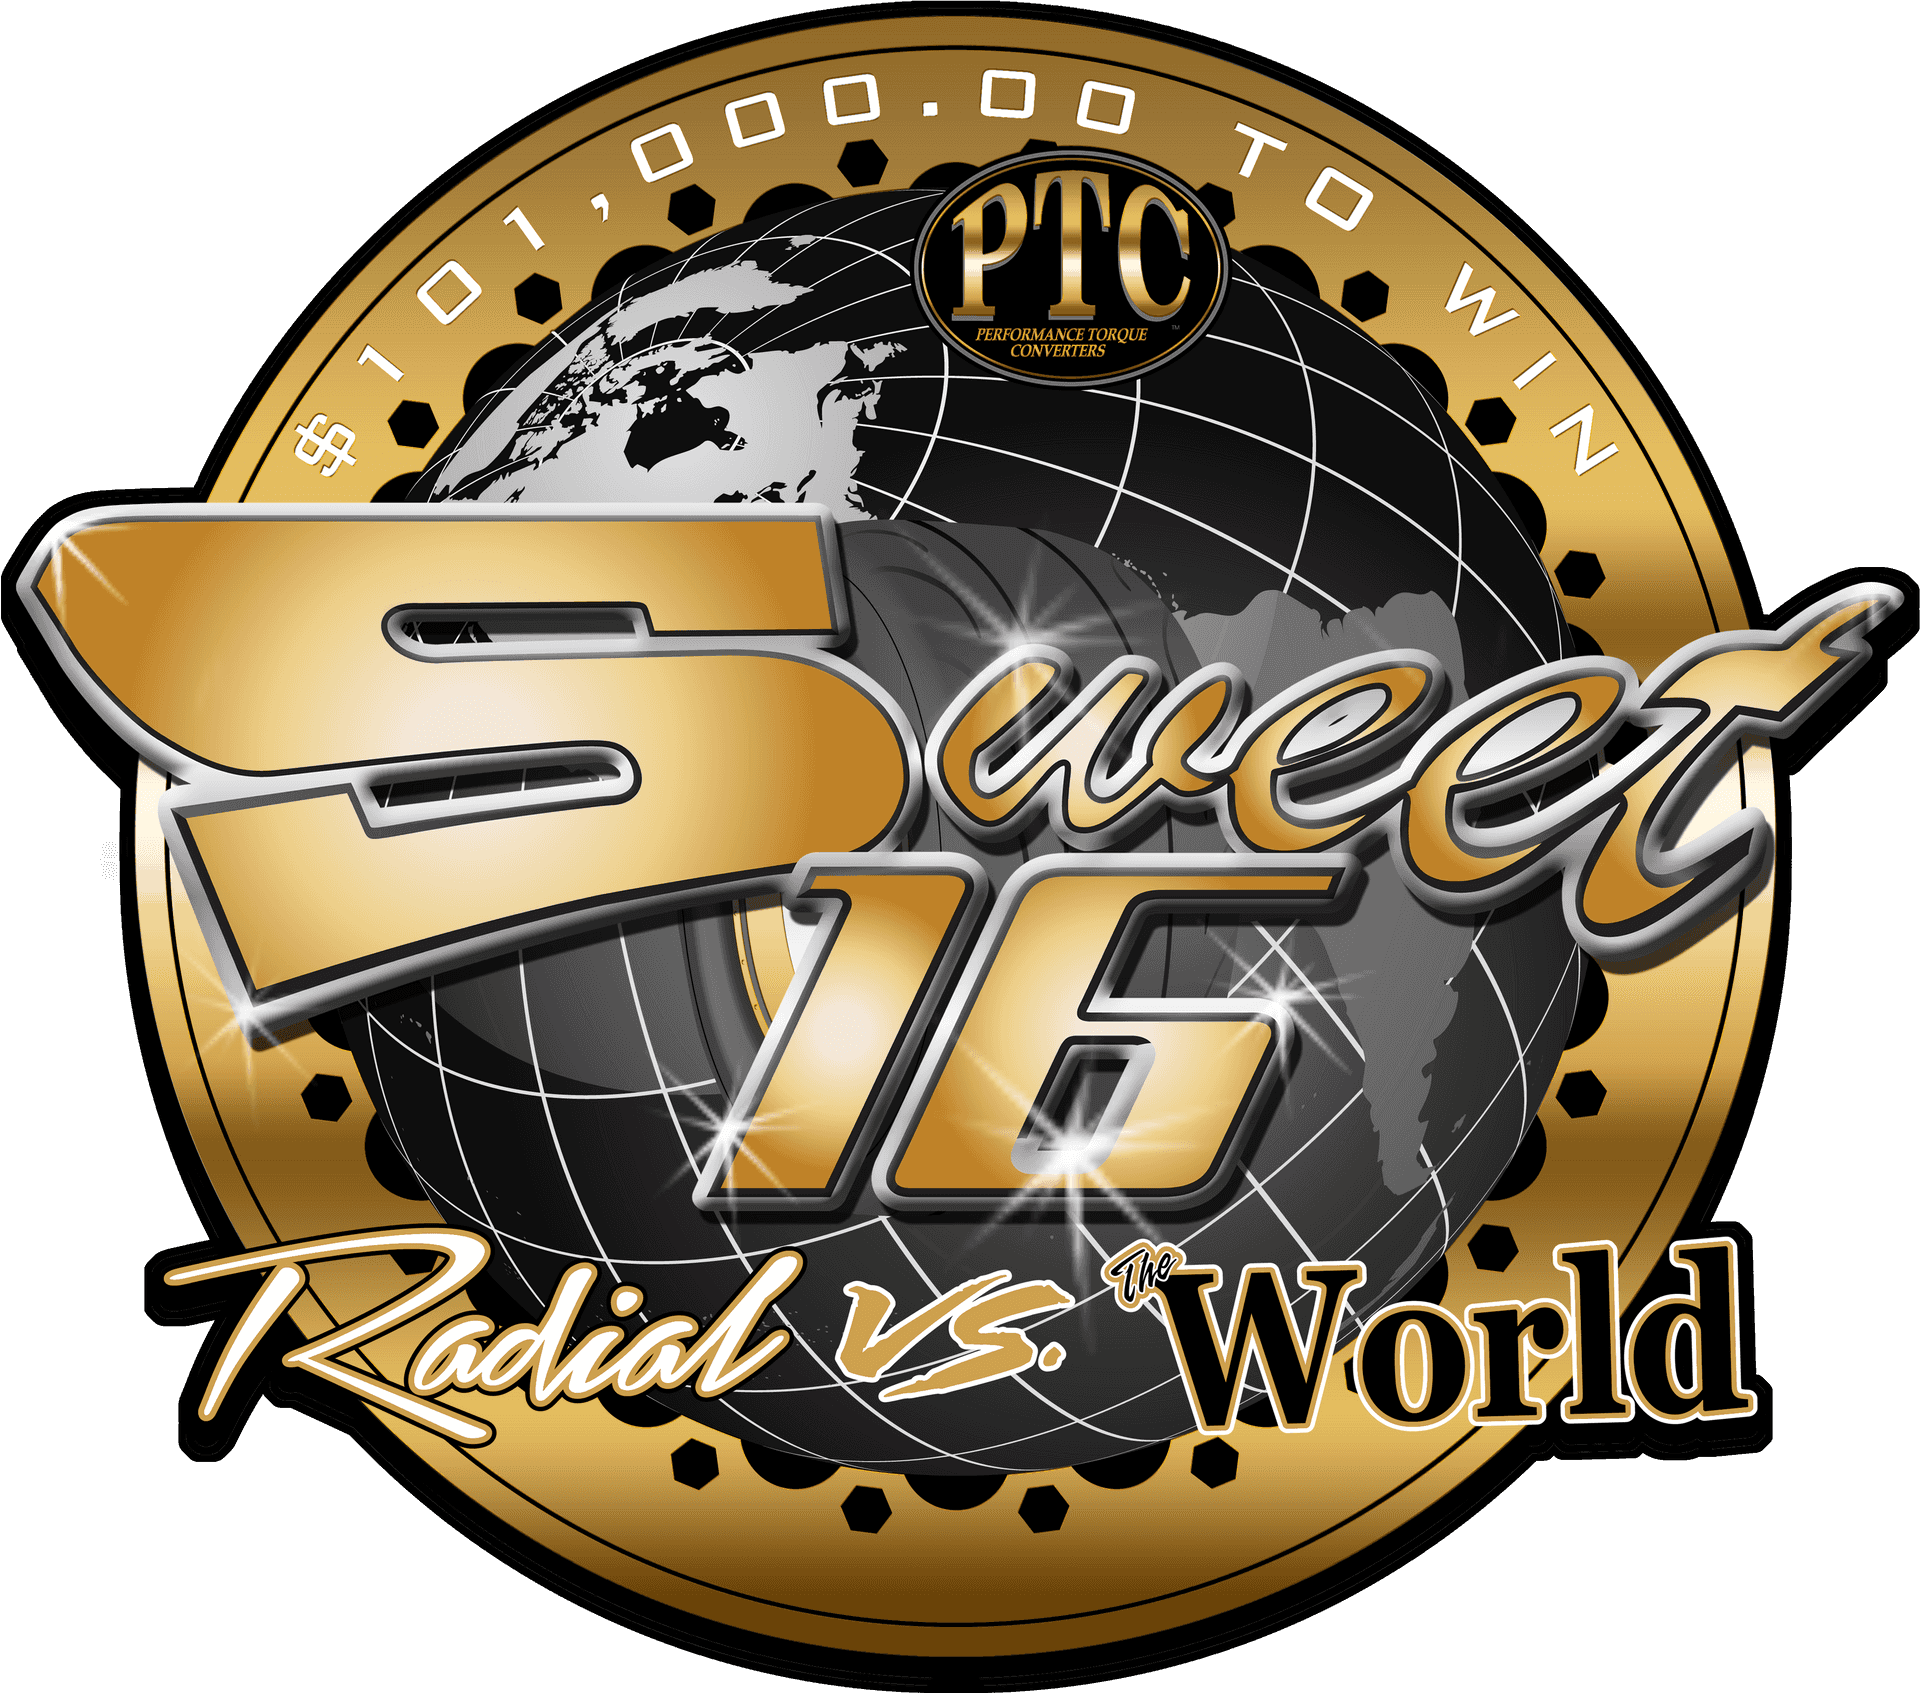 Sweet16 Radial Vs World Logo PNG